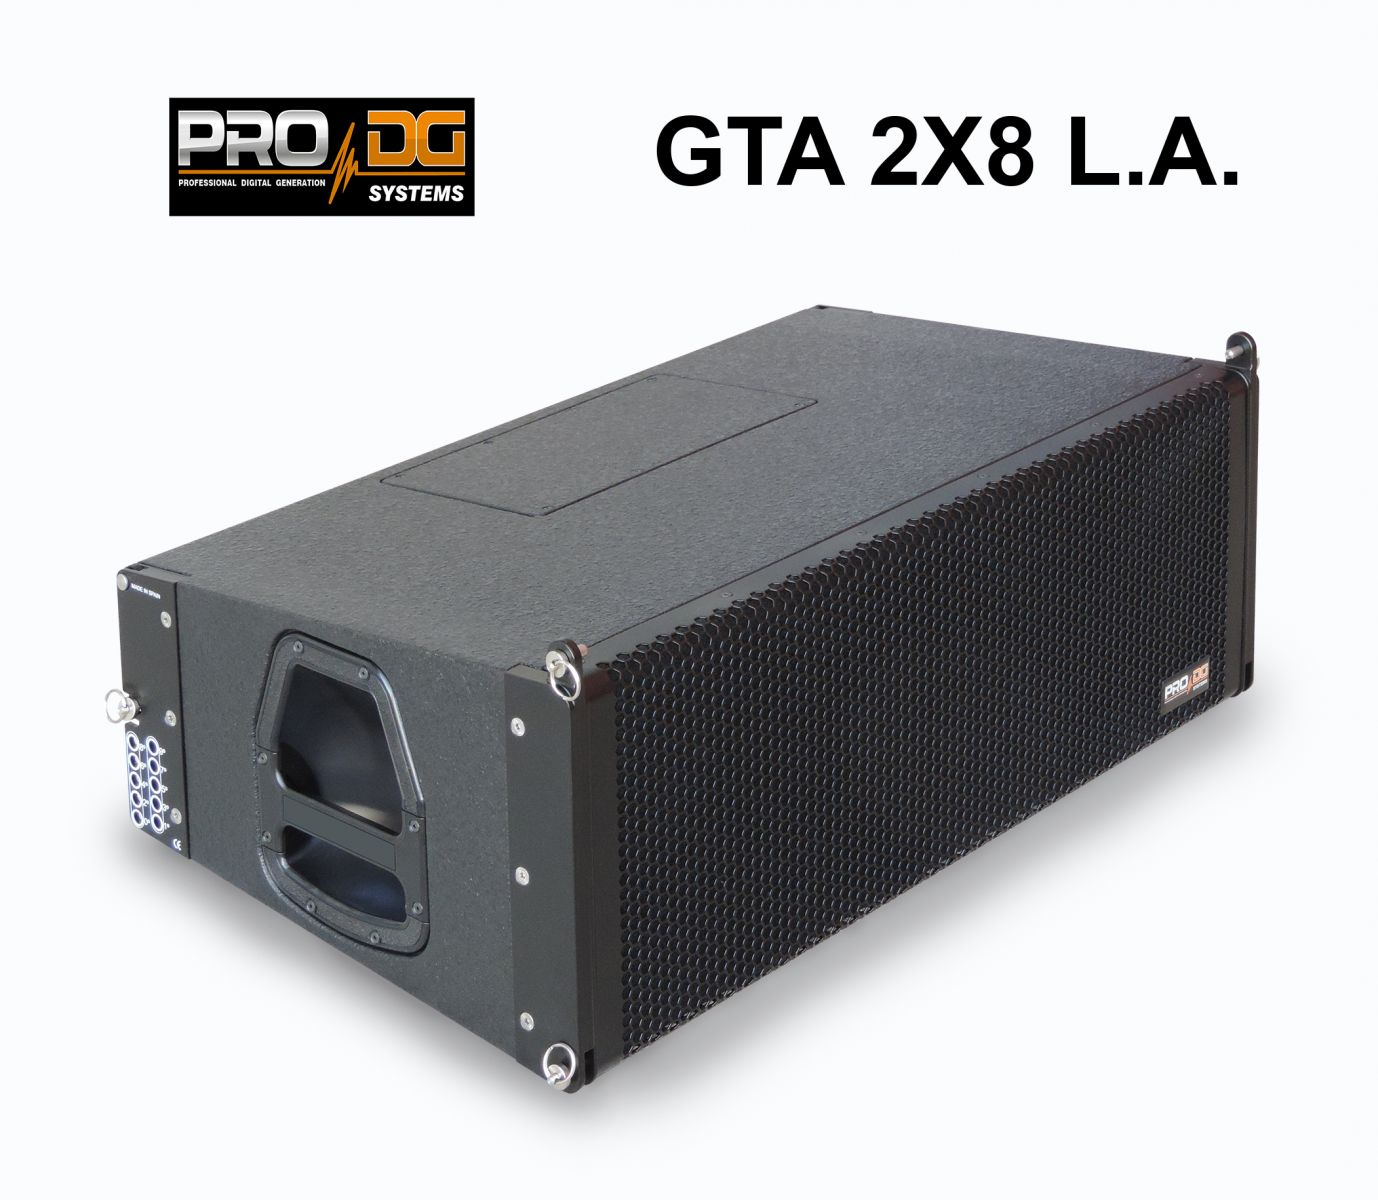 LOA ACTIVE LINE ARRAY PRO DG SYSTEMS - GTA 2x8 L.A. (PRO DG - SPAIN ) 